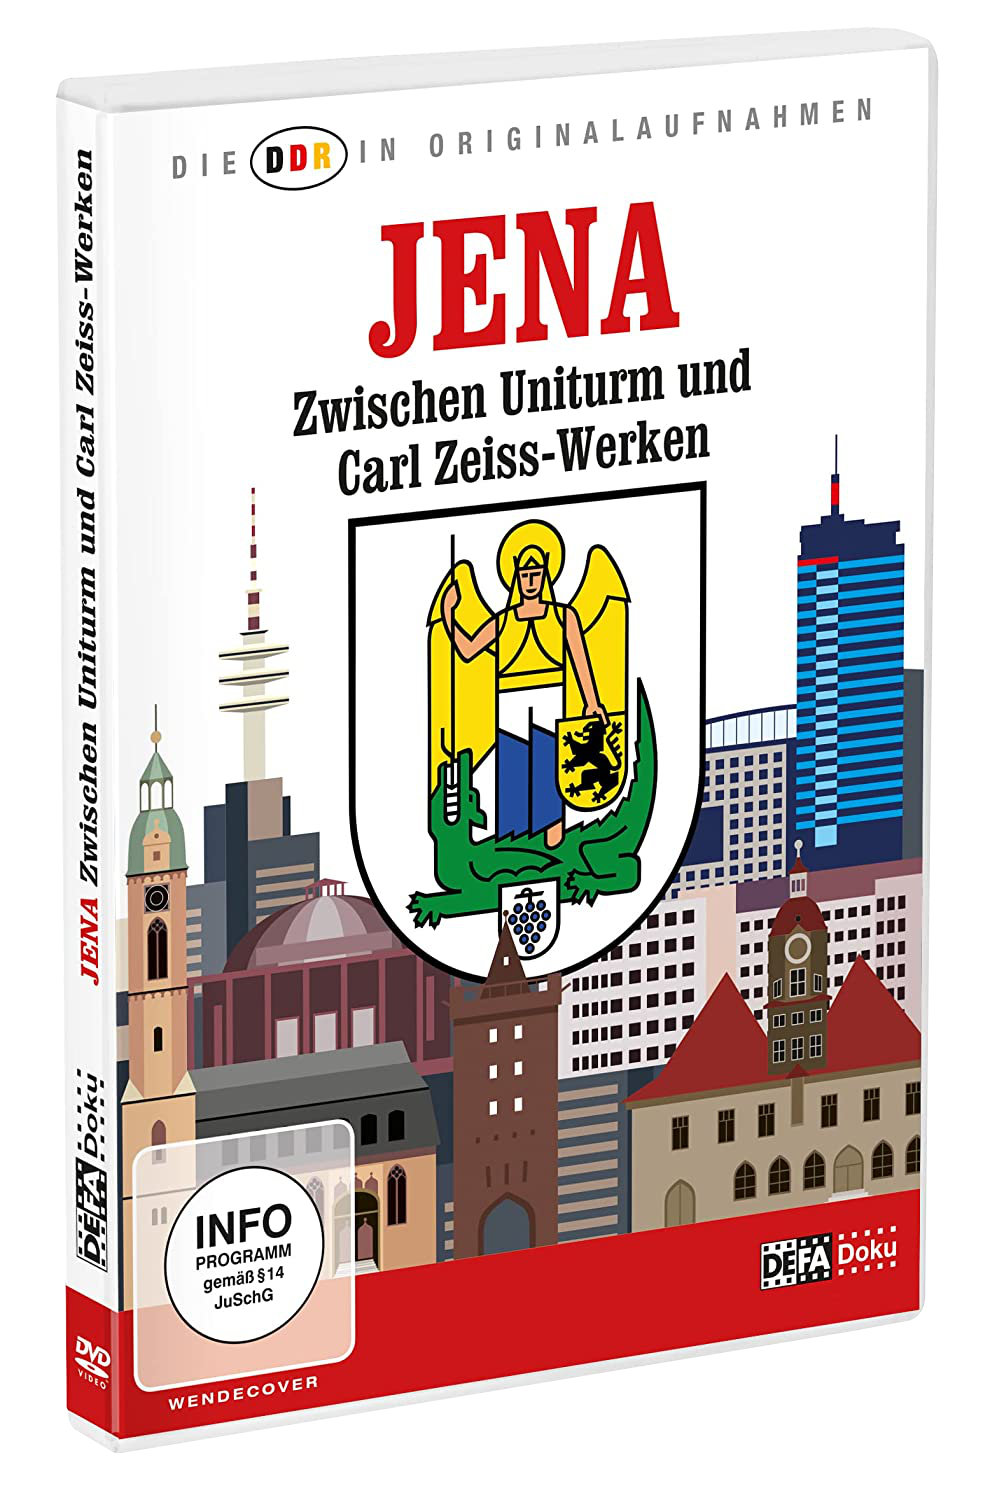 Die DDR In Originalaufnahmen-Jena Zwischen Uniturm & Carl-Zeiss-Werken